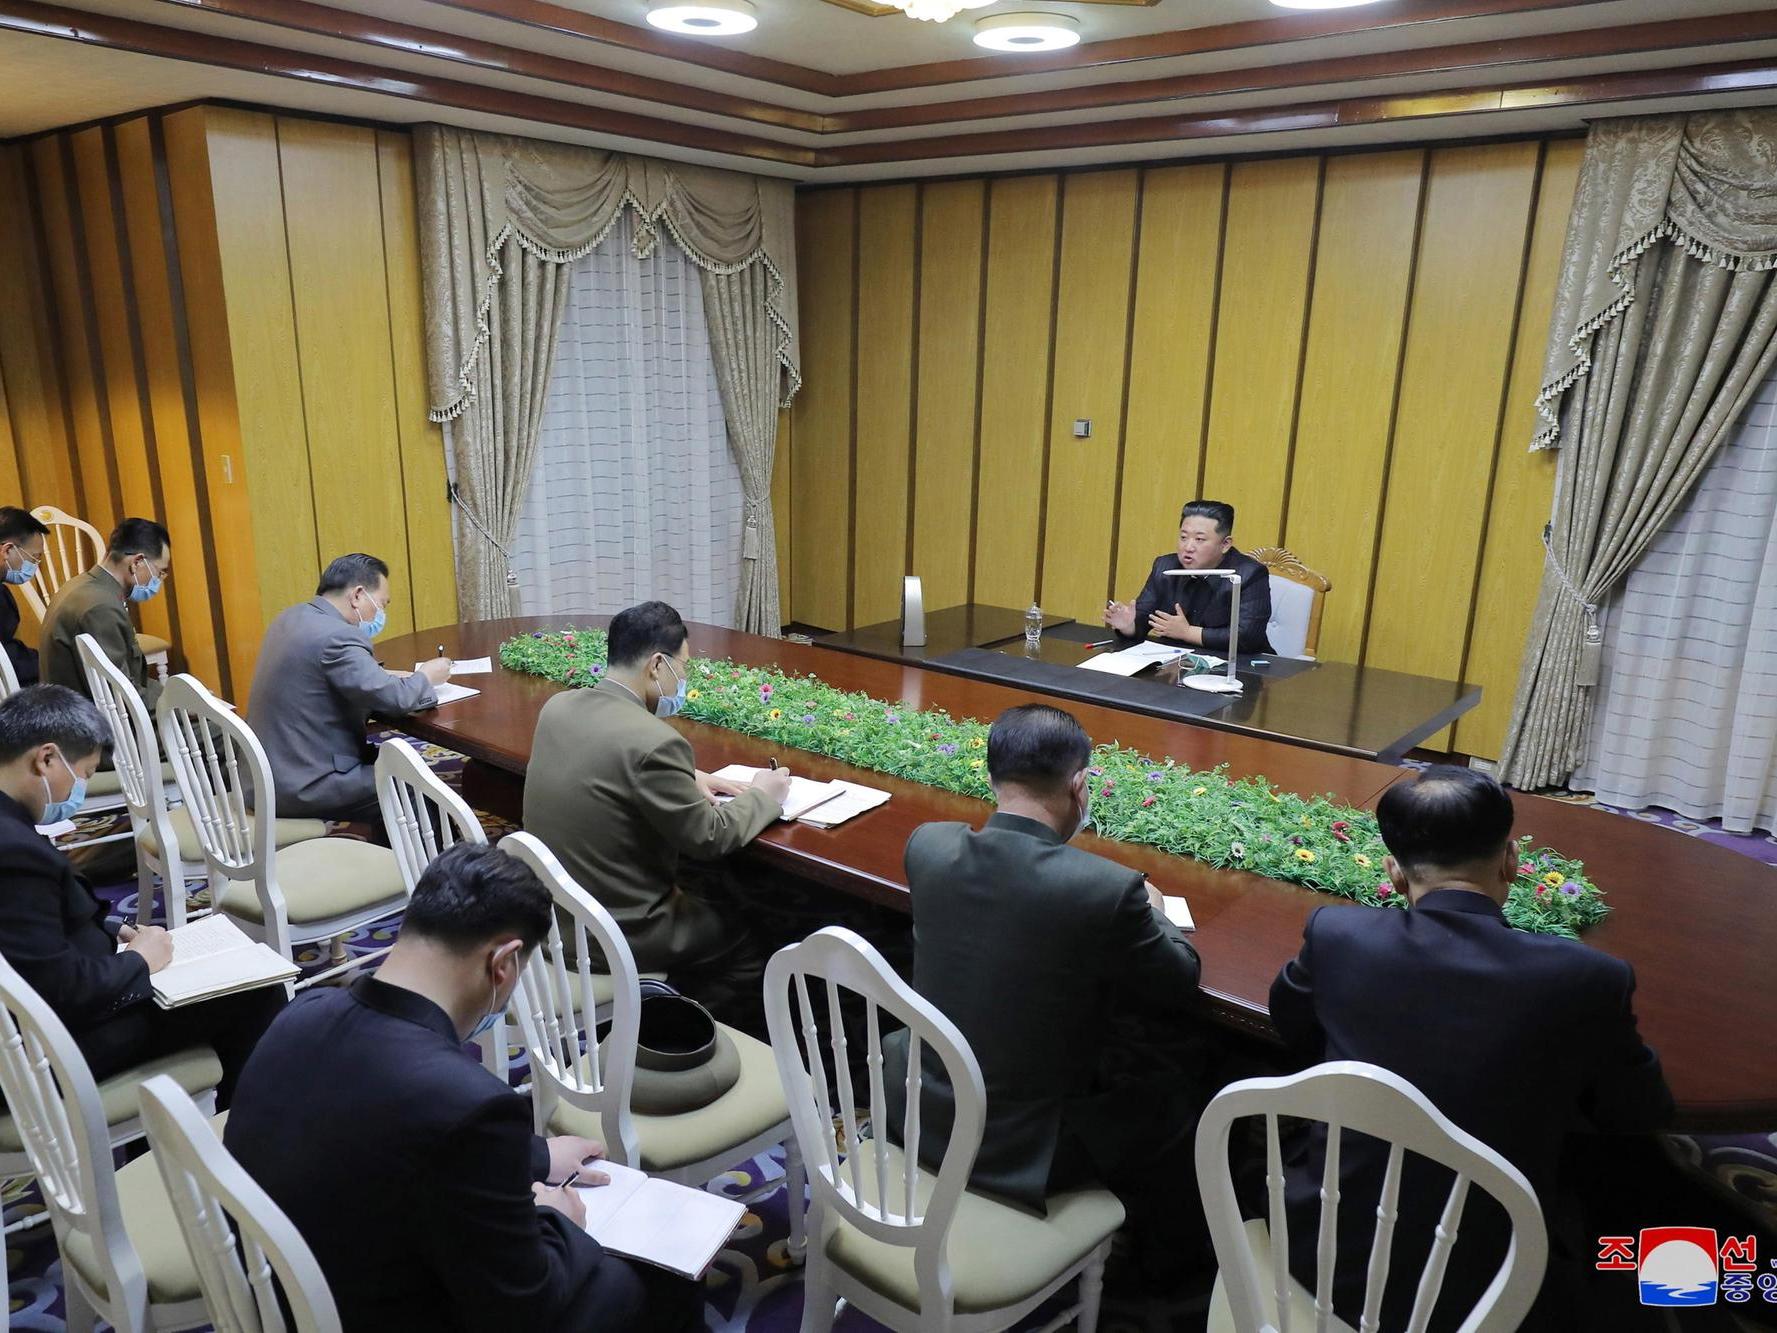 Seul offre alla Corea del Nord l’invio di vaccini anti-Covid